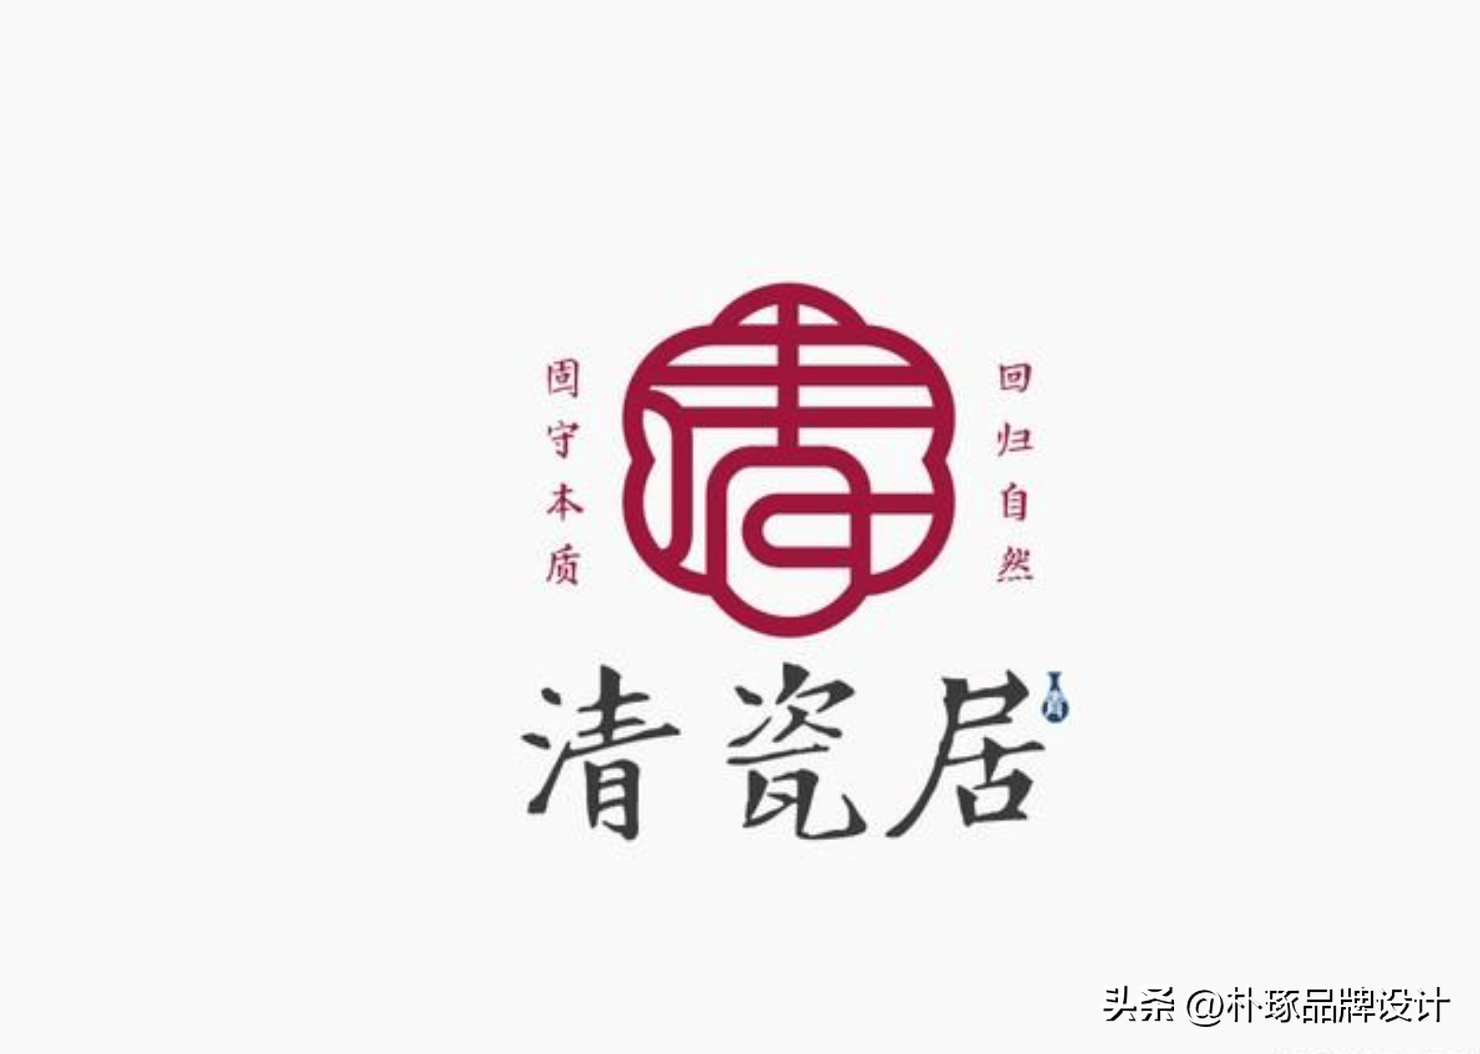 中国印章就是文化符号 新中式logo中常见但需要破